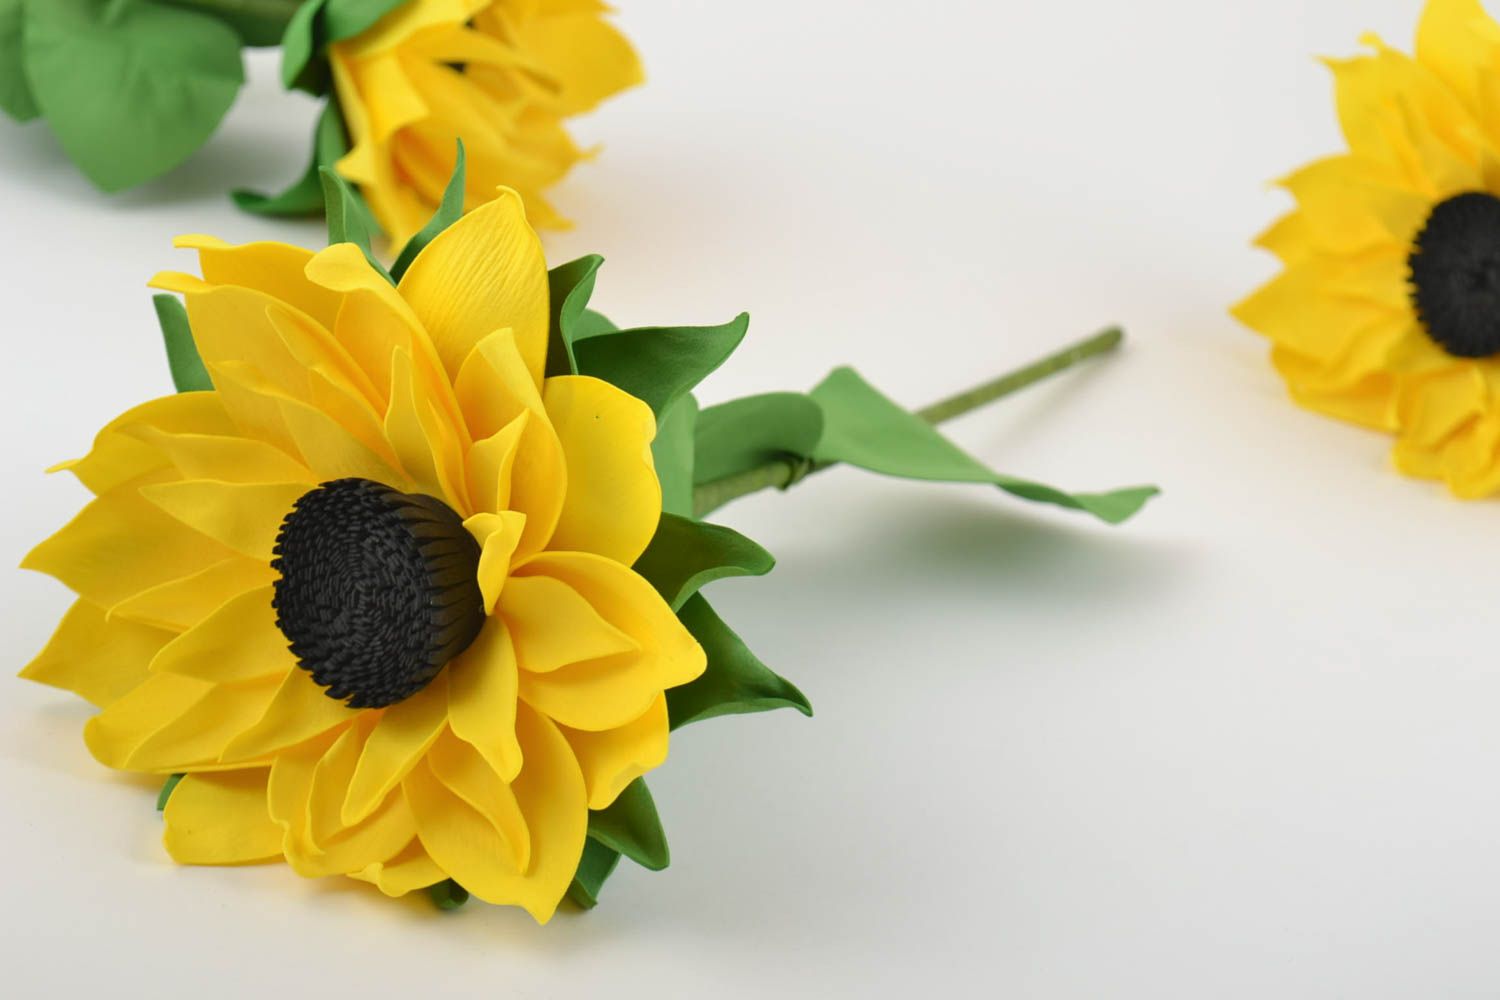 Декоративный цветок подсолнух из фоамирана для дома или подарка ручной работы фото 1